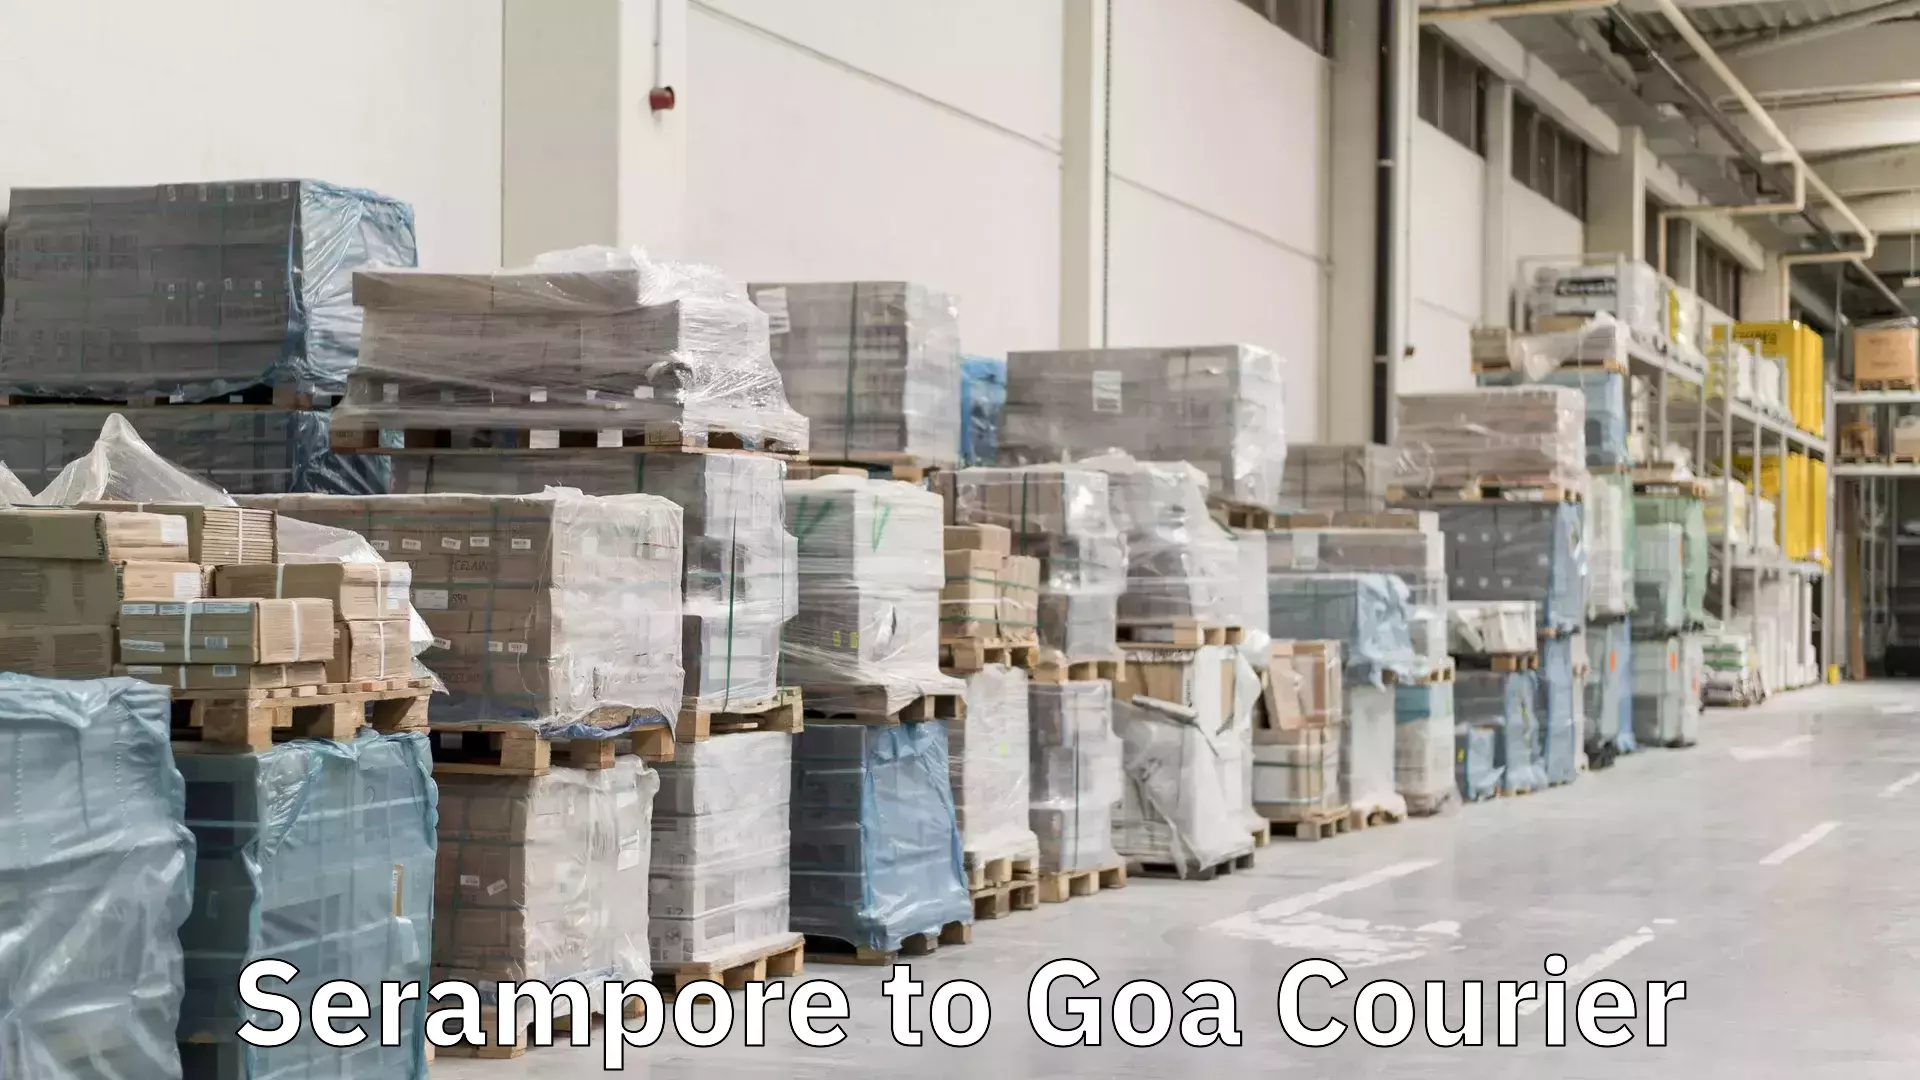 Cash on delivery service Serampore to Goa